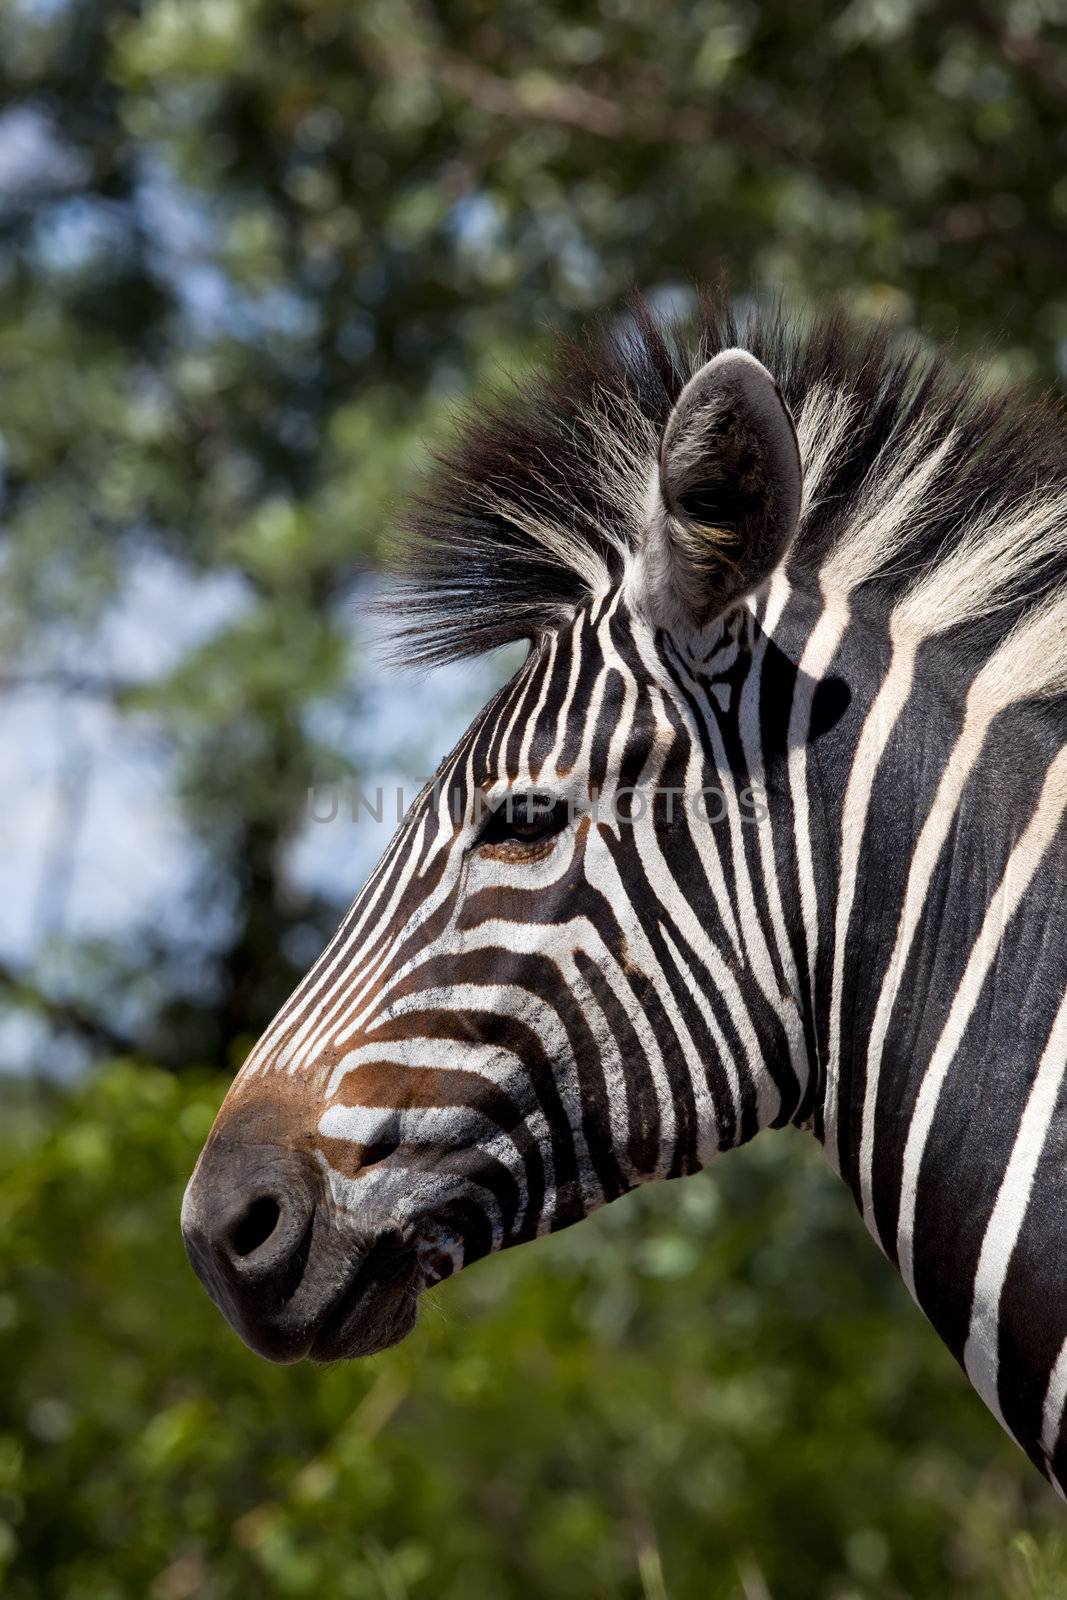 Close up head shot of a zebra